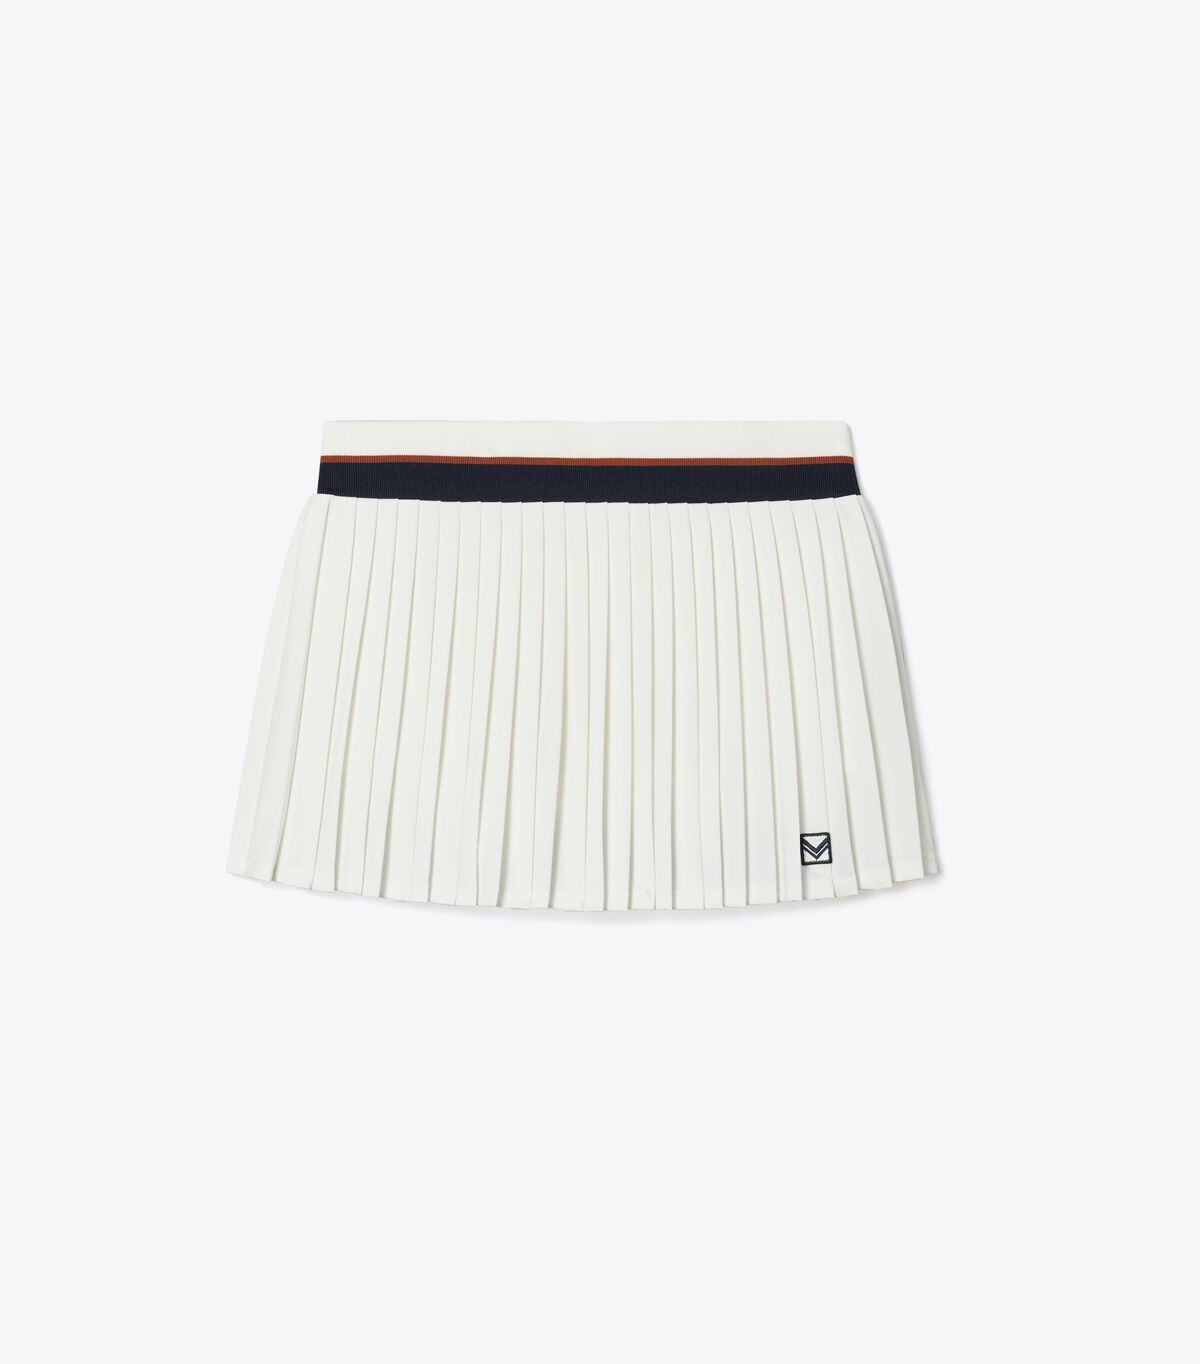 Pleated Mini Tennis Skirt